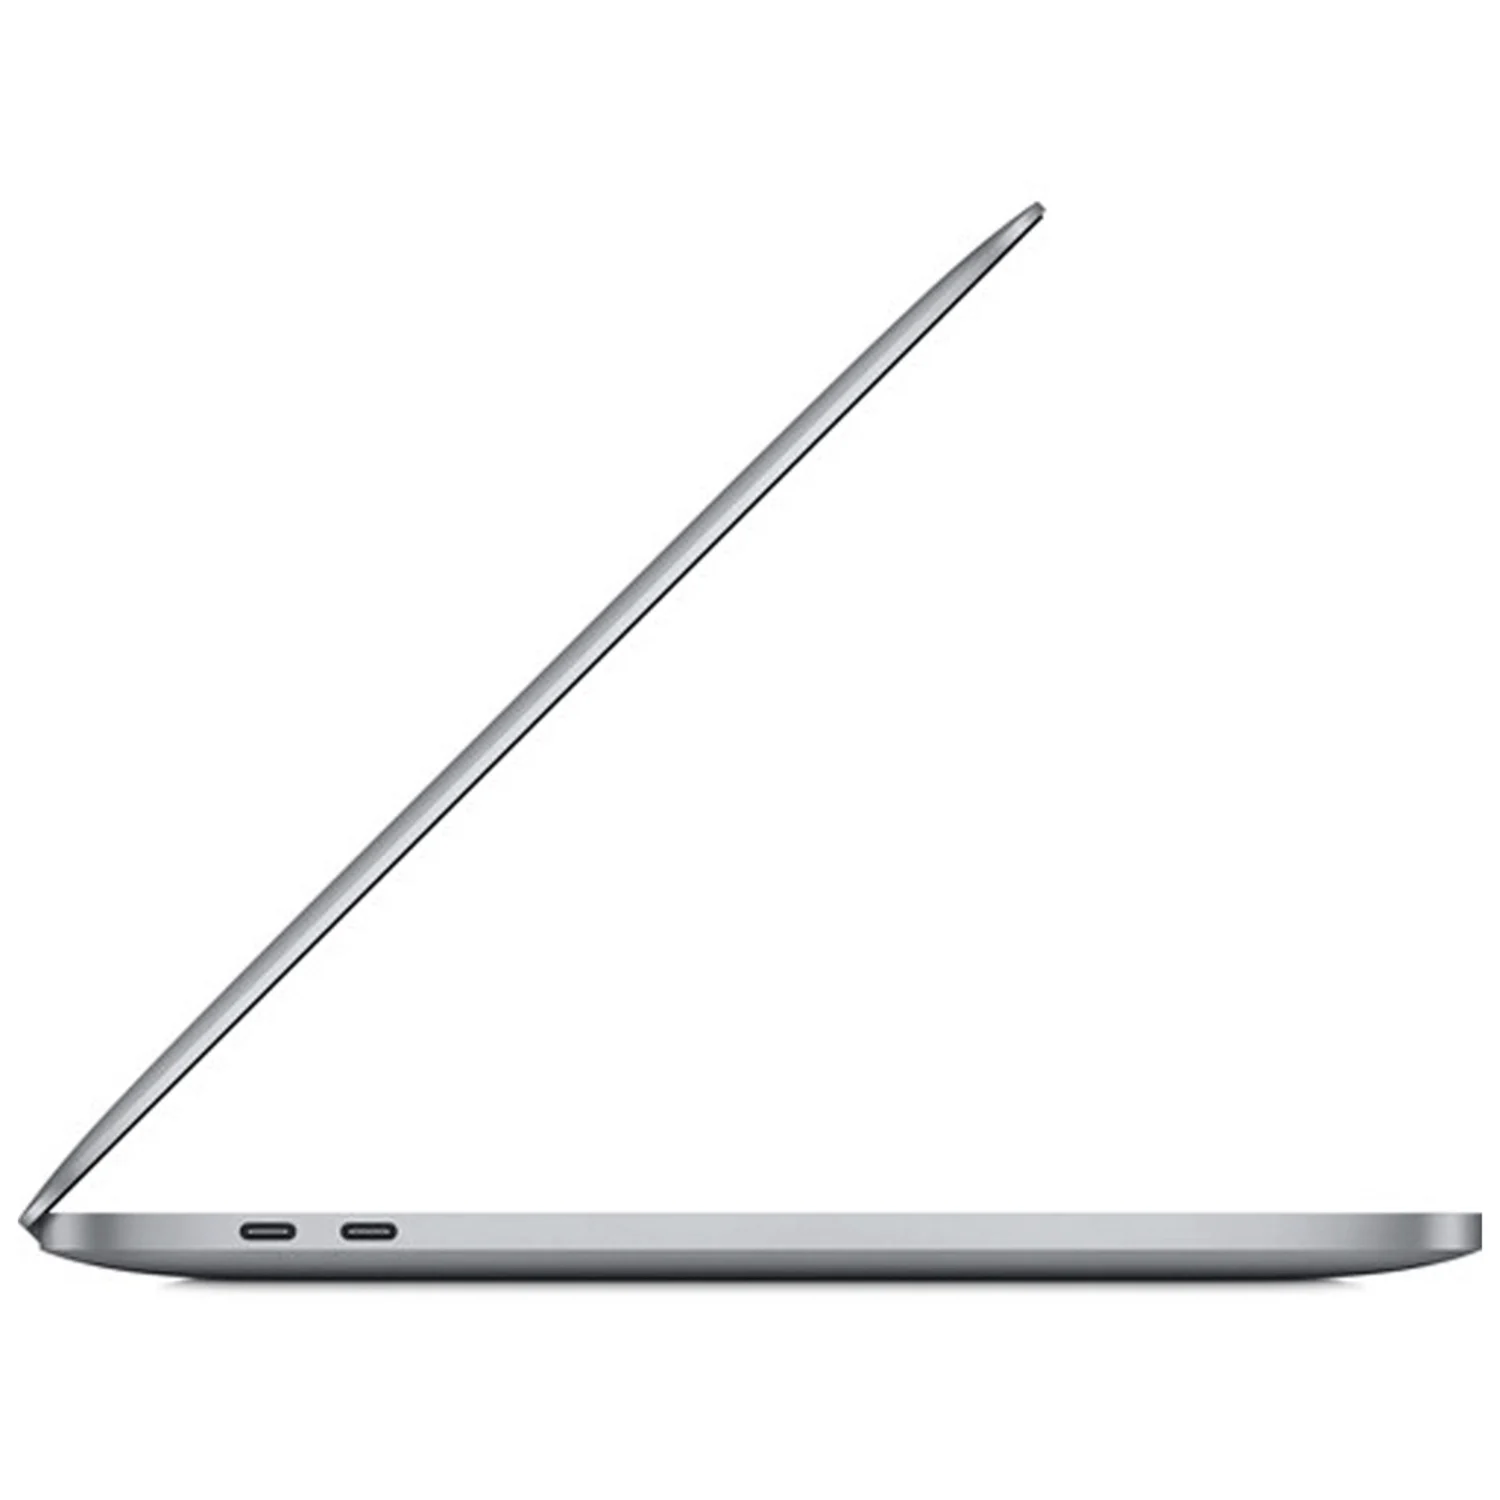 Apple Macbook Pro 2020 MYD82LL/A 13.3" Chip M1 256GB SSD 8GB RAM - Cinza Espacial